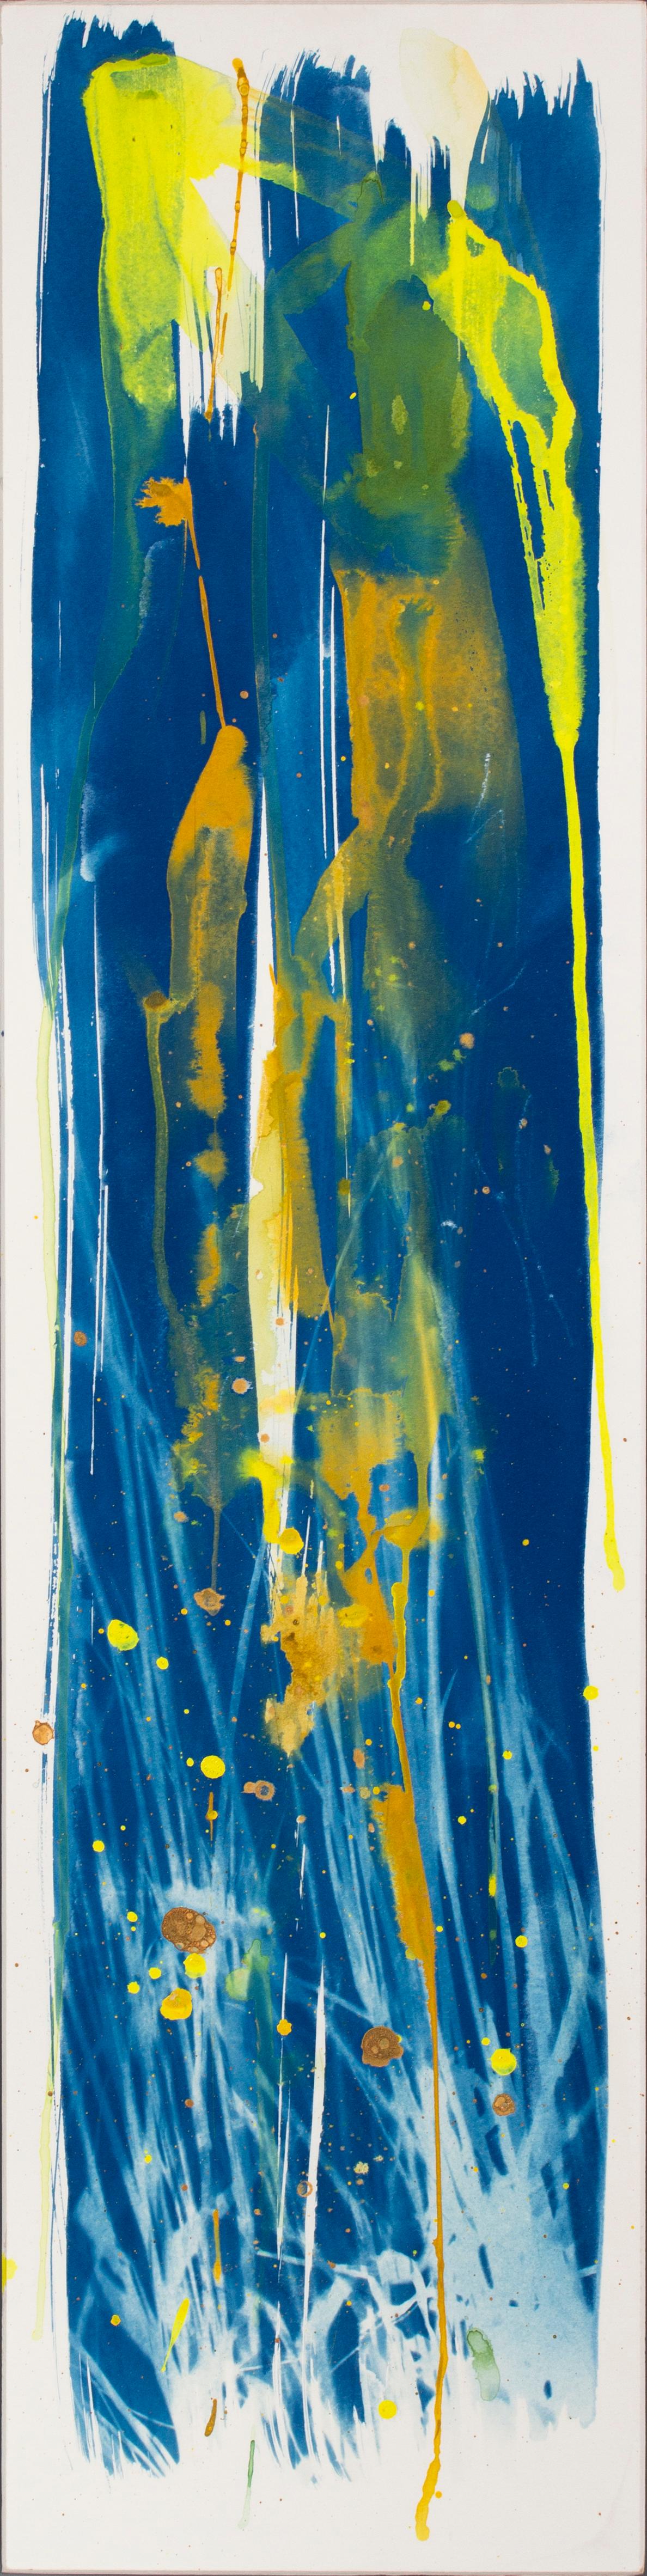 Sophia Milligan Abstract Painting – 'Pollen und Schwalben'. Gemälde in Mischtechnik auf Karton, gerahmt